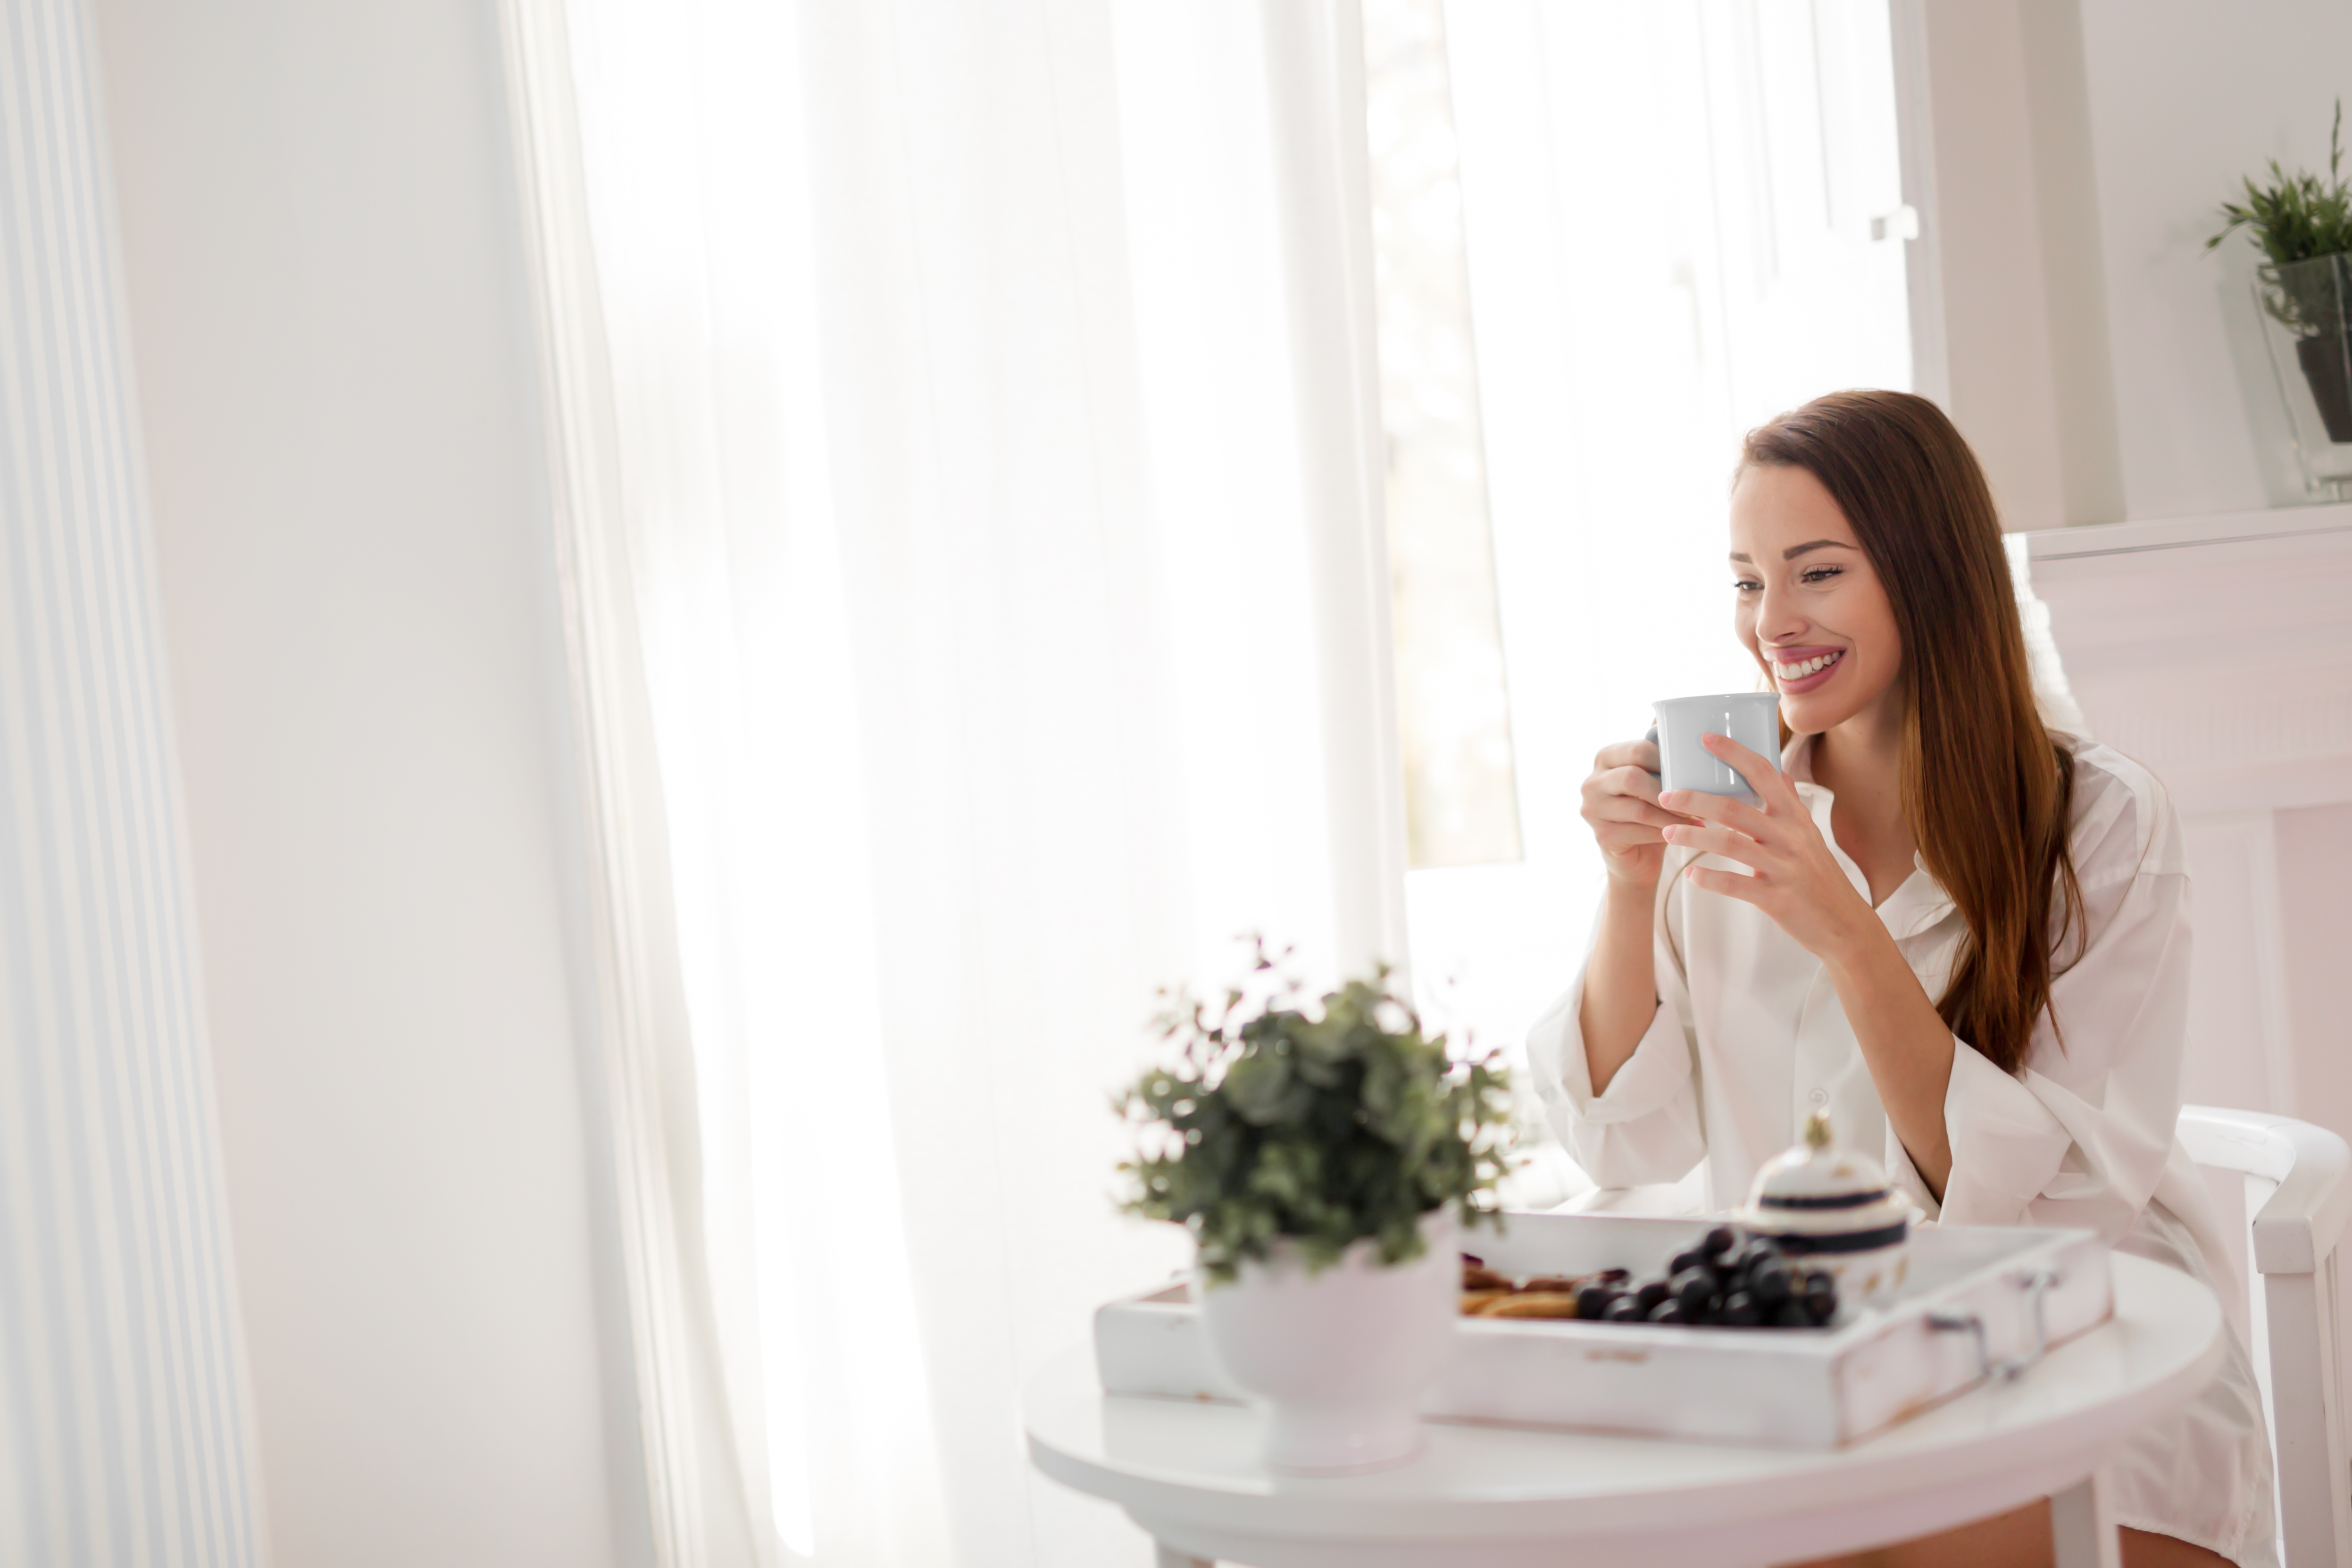 Beautiful woman enjoying morning tea wearing shirt